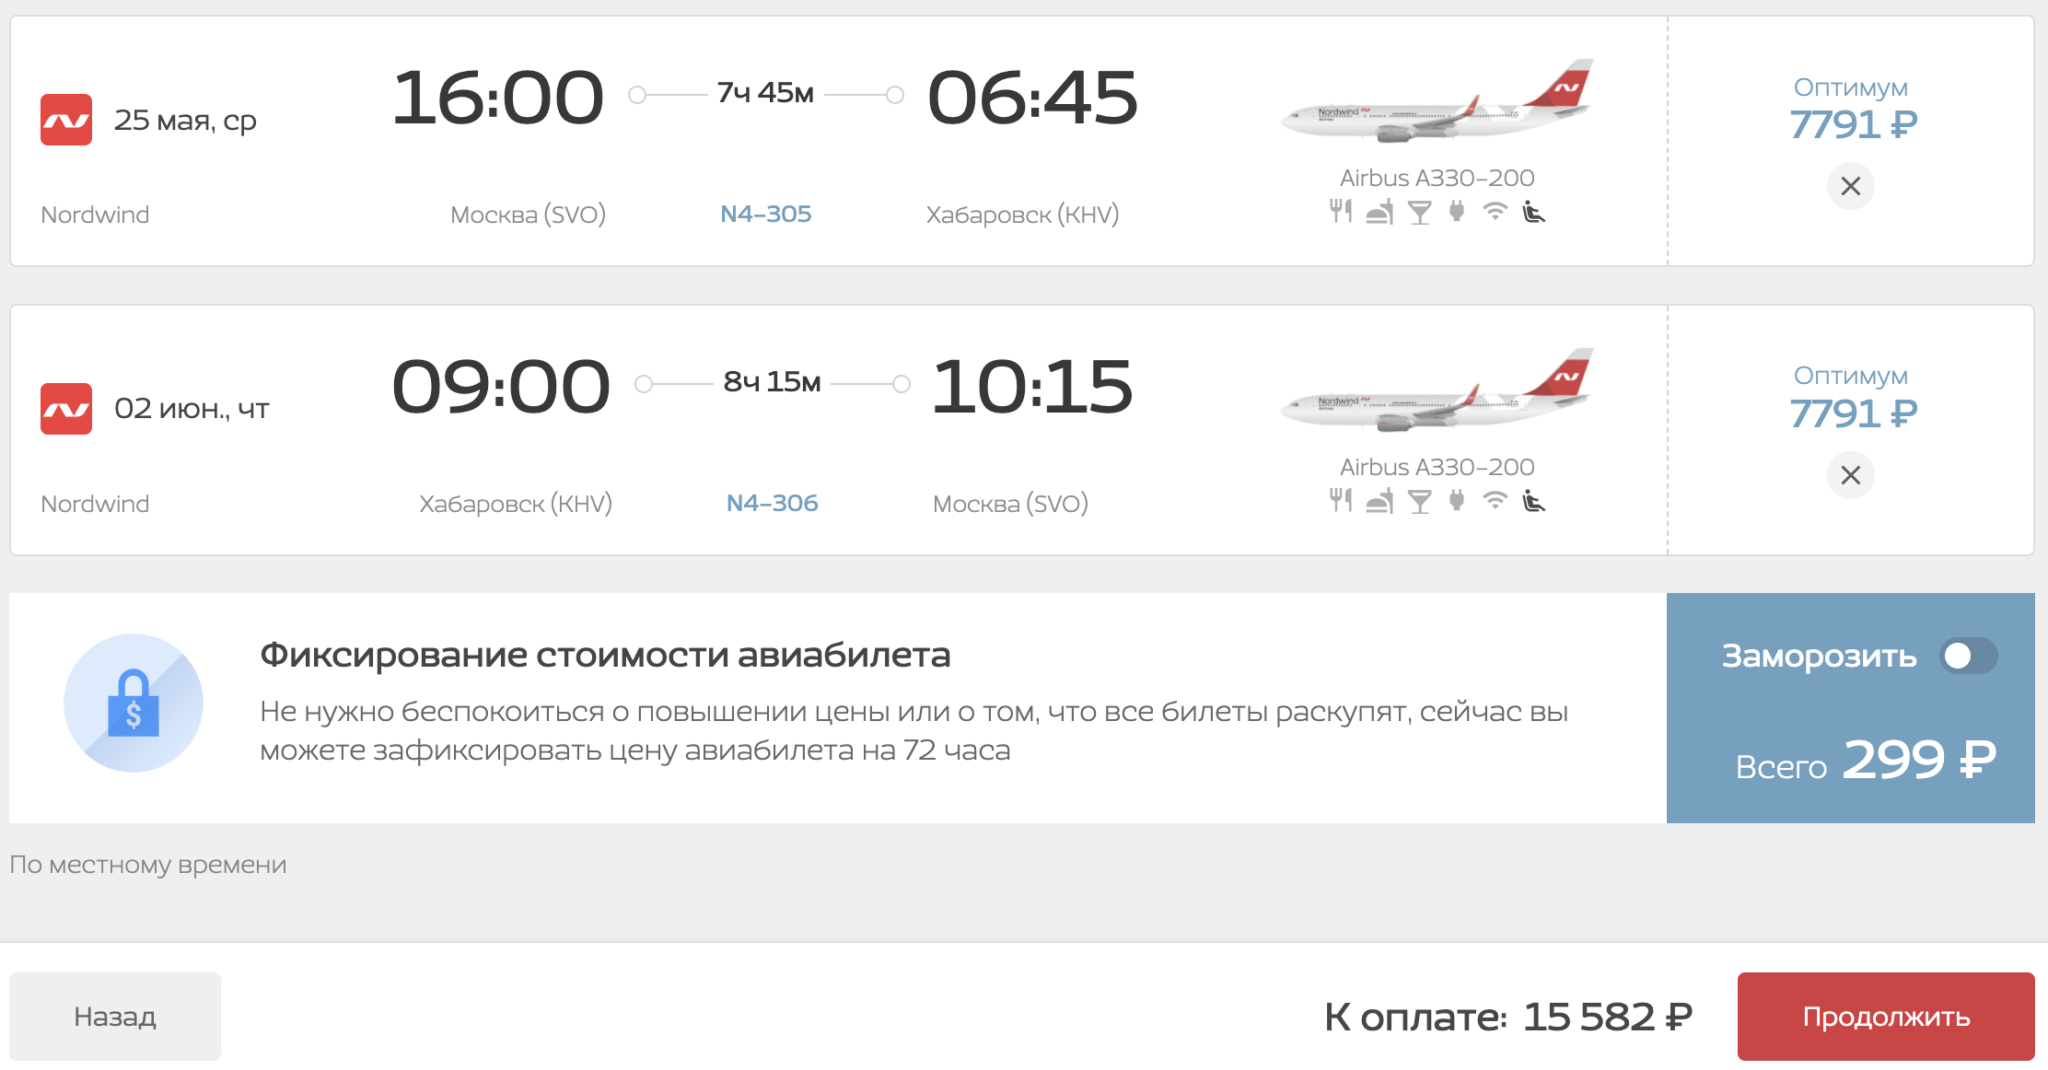 У Nordwind распродажа билетов: из Москвы в Сочи и Махачкалу от 2997₽, в Хабаровск и Владивосток от 15600₽ туда-обратно